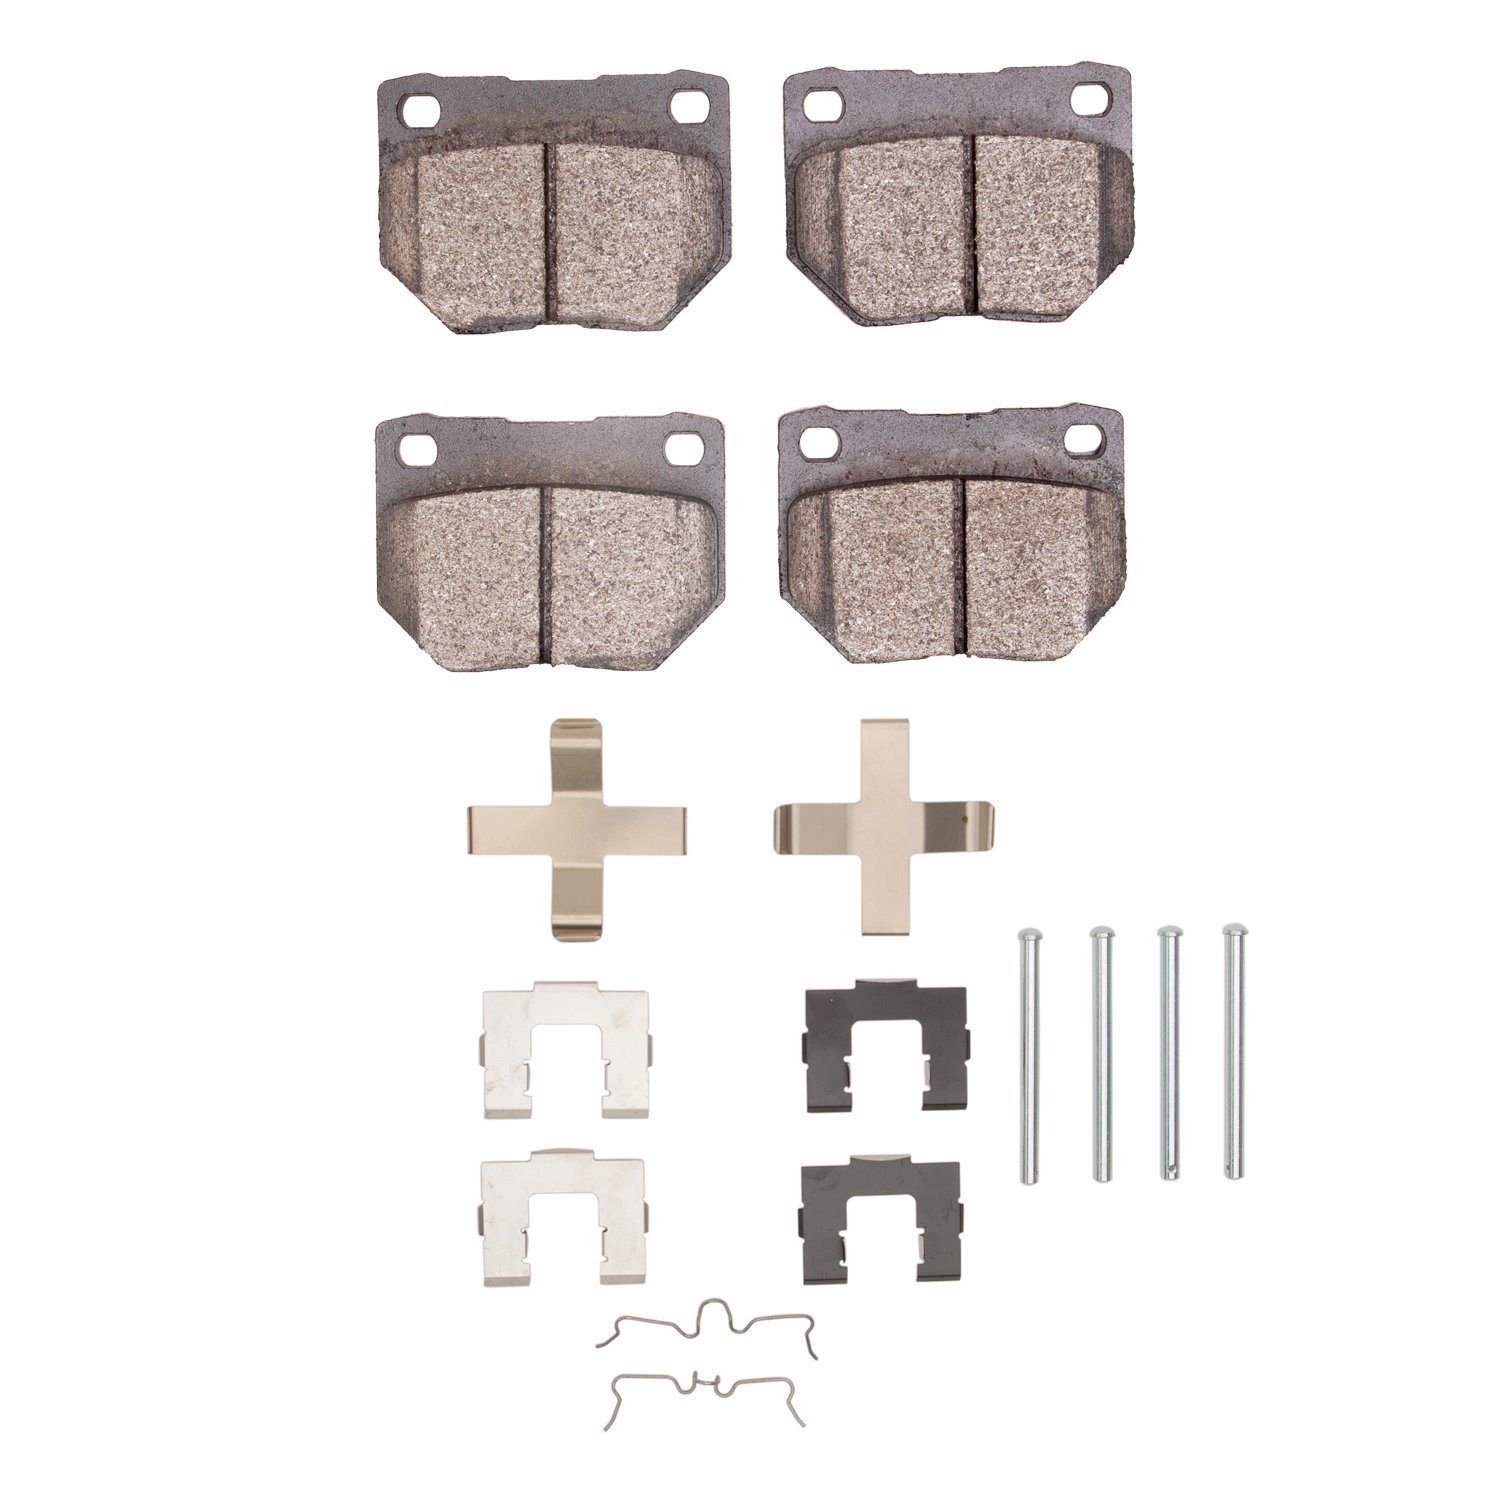 1310-0461-01 3000-Series Ceramic Brake Pads & Hardware Kit, 1989-1996 Infiniti/Nissan, Position: Rear